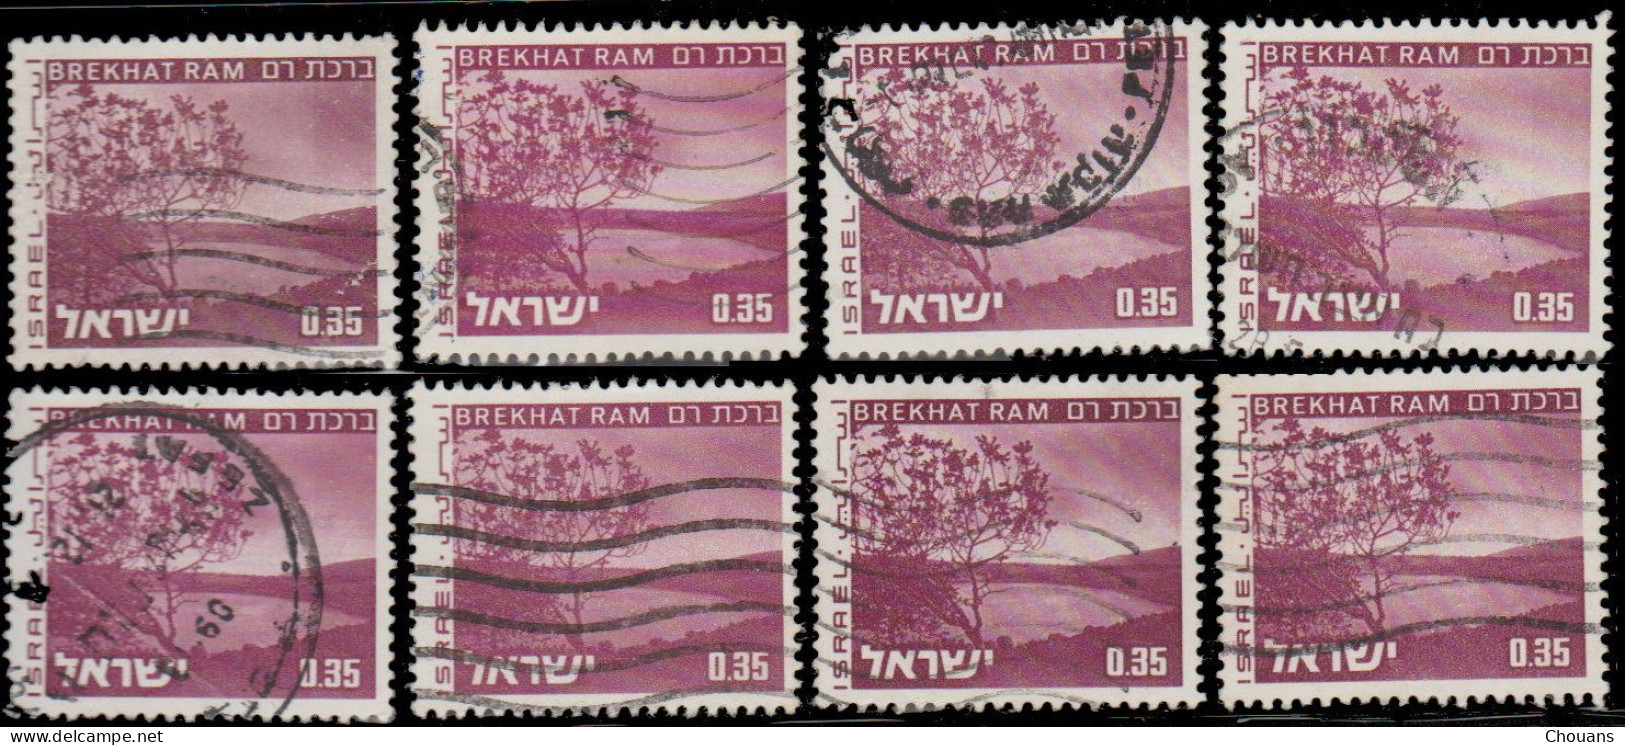 Israël 1973. ~ YT 534 (par 8) - Breckhat Ram - Gebraucht (ohne Tabs)